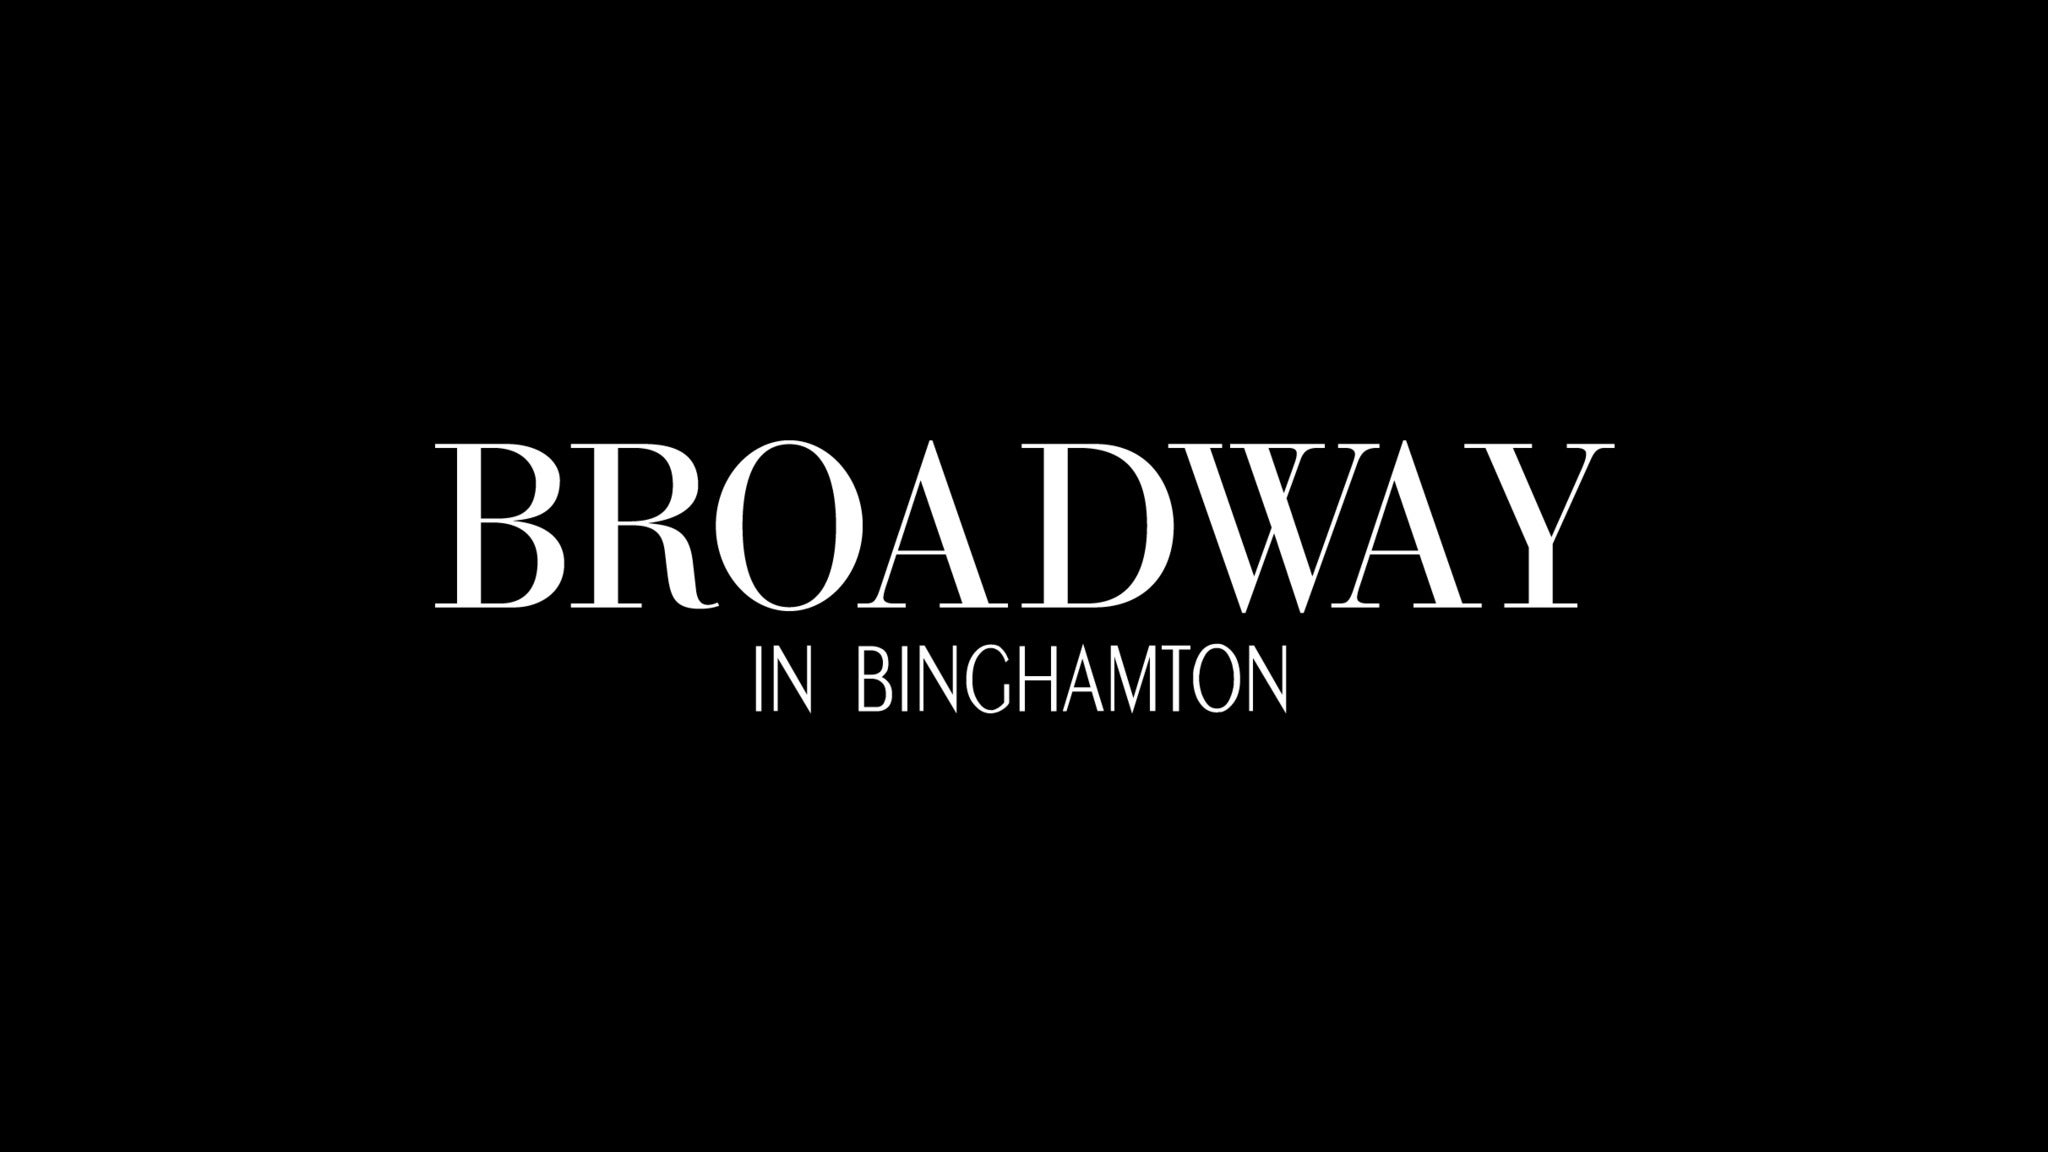 Broadway in Binghamton presale information on freepresalepasswords.com